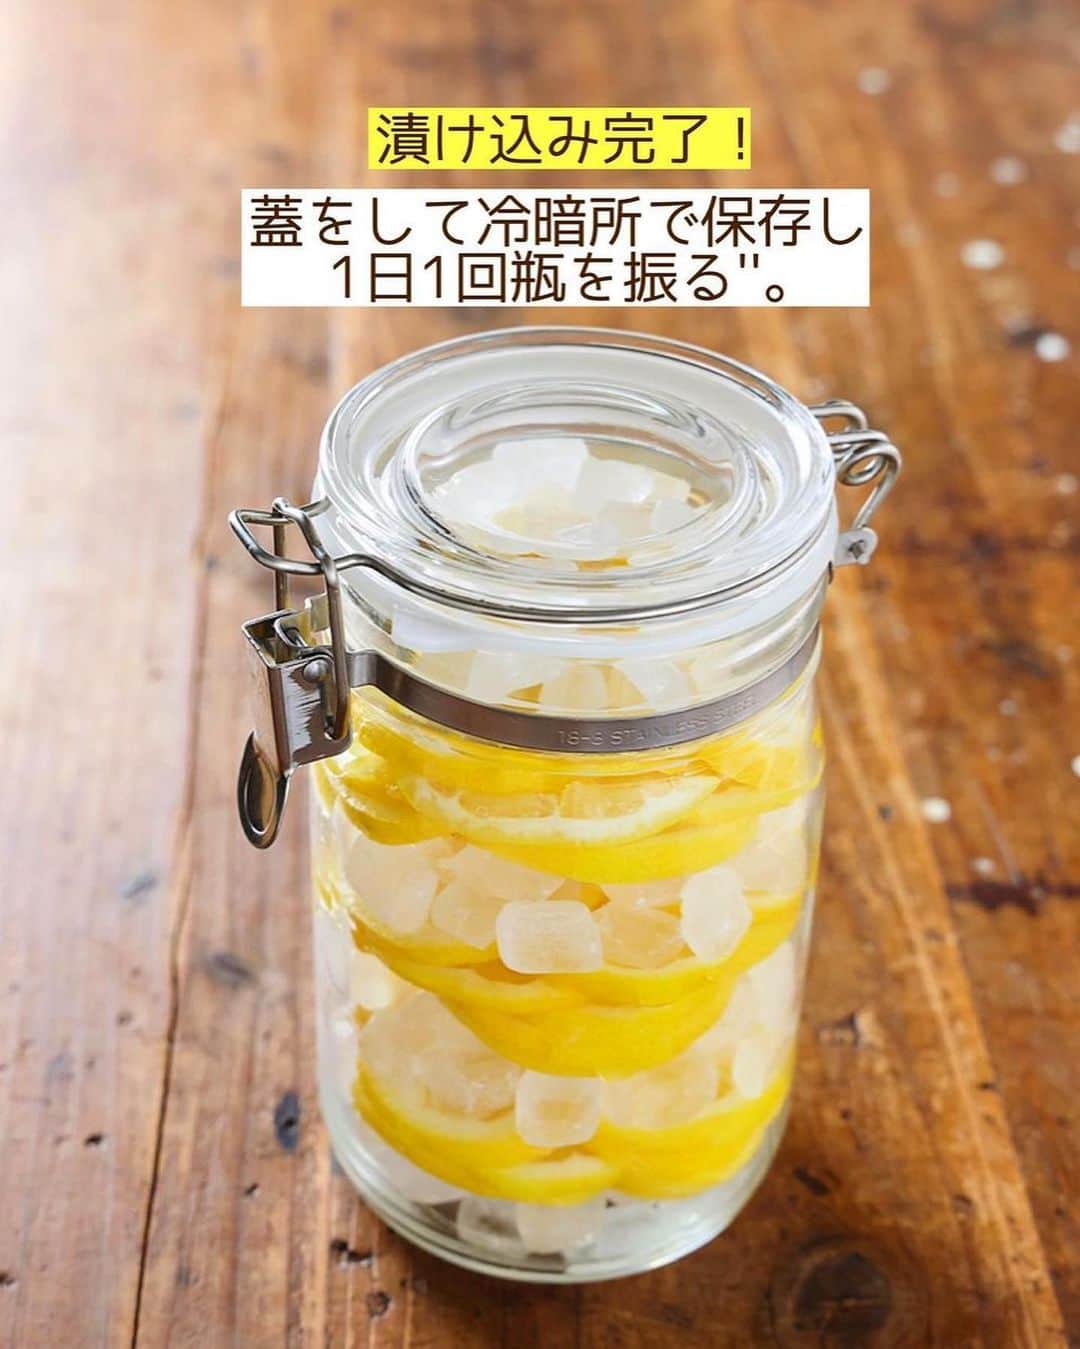 Mizuki【料理ブロガー・簡単レシピ】さんのインスタグラム写真 - (Mizuki【料理ブロガー・簡単レシピ】Instagram)「・レモンシロップ🍋 ⁡ 【#レシピ 】ーーーーーーー レモンシロップの作り方& レモンフレンチトースト ーーーーーーーーーーーーー ⁡ ⁡ ⁡ おはようございます☺️ ⁡ 昨日はライブ配信にお付き合いいただいて ありがとうございました🙇‍♀️✨ (動画は1つ前に保存しております🍋) ⁡ 今日はレモンシロップの作り方と レモンシロップのアレンジレシピ \ レモンフレンチトースト /  をテキストでご紹介します♩ ⁡ ⁡ 私は昨年に引き続き 今年も色んな果物を 氷砂糖に漬けて楽しんでいますよ〜💕 氷砂糖は普通のお砂糖より純度が高くて 果実のエキスをた〜っぷり 引き出してくれます🤭 (@zennihonhyoutou ) ⁡ ⁡ ⁡ ＿＿＿＿＿＿＿＿＿＿＿＿＿＿＿＿＿＿＿＿＿ 【レモンシロップ】 (1リットル瓶) レモン…3〜4個(400g) 氷砂糖…400g   1.レモンは洗って水気をふき取り、5〜8mm幅の輪切りにする。 2.消毒した清潔な瓶に、1と氷砂糖を交互に重ね入れ、一番上は氷砂糖になるようにする。 3.蓋をして冷暗所で保存し、氷砂糖が溶けるまで、''1日1回レモン全体をコーティングするように瓶を振る''。 4.約1週間でレモンシロップのできあがり！レモンを取り出し、冷蔵庫に保存する。 ￣￣￣￣￣￣￣￣￣￣￣￣￣￣￣￣￣￣￣￣￣ ⁡ ⁡ 《ポイント》 ♦︎ノーワックスの国産レモンを使うか、皮をしっかりと洗うようにしてください。(洗い方はアーカイブにて) ♦︎レモンと氷砂糖1：1の比率です。比率が維持されていれば分量の変更OK！ ♦︎必ず消毒した清潔な瓶を使用して下さい♩私はアルコール消毒しています。 ♦︎漬けた後は冷暗所(常温)、完成後は果実を取り出し、冷蔵庫で保存して下さい。1~2ヶ月保存できます♩ ⁡ ⁡ ⁡ ⁡ ⁡ ⁡ #レモンシロップアレンジレシピ 🍋 ＿＿＿＿＿＿＿＿＿＿＿＿＿＿＿＿＿＿＿＿＿ 【レモンフレンチトースト】 (2人分) 食パン(5枚切り)...2枚 ⚫︎卵...1個 ⚫︎牛乳...100ml ⚫︎レモンシロップ...大2 バター...20g レモンシロップの果実・はちみつ・ミント...各適量 ⁡ 1.食パンは(好みで)耳を切り落として半分に切る。 2.バットに⚫︎を入れてよく混ぜ、1を両面浸し、冷蔵庫で30分以上おく。 3.フライパンにバターを弱めの中火で熱し、2を両面焼き色が付くまでじっくり焼く。 4.器に盛り、はちみつをかけ、レモンシロップの果実とミントをトッピングする。 ￣￣￣￣￣￣￣￣￣￣￣￣￣￣￣￣￣￣￣￣￣ ⁡ ⁡ ⁡ ⁡ ちなみに レモンシロップを炭酸水で割ると レモンスカッシュ、水で割るとレモネード お湯で割るとホットレモンになります♩ ⁡ @zennihonhyoutou さんでは  『氷砂糖のある暮らし写真投稿キャンペーン』 を開催中！ みなさんも作ってくださいましたら #氷砂糖のある暮らし #氷砂糖 をつけて 投稿してくださいね🍋✨ ⁡ ⁡ ⁡ ⁡ ⁡ ⁡ #氷砂糖のある暮らし  #氷砂糖  #全日本氷糖工業組合  #レモンシロップ #自家製レモンシロップ  #おうち時間 #フルーツシロップ  #レモン #フレンチトースト #簡単レシピ」6月13日 6時32分 - mizuki_31cafe